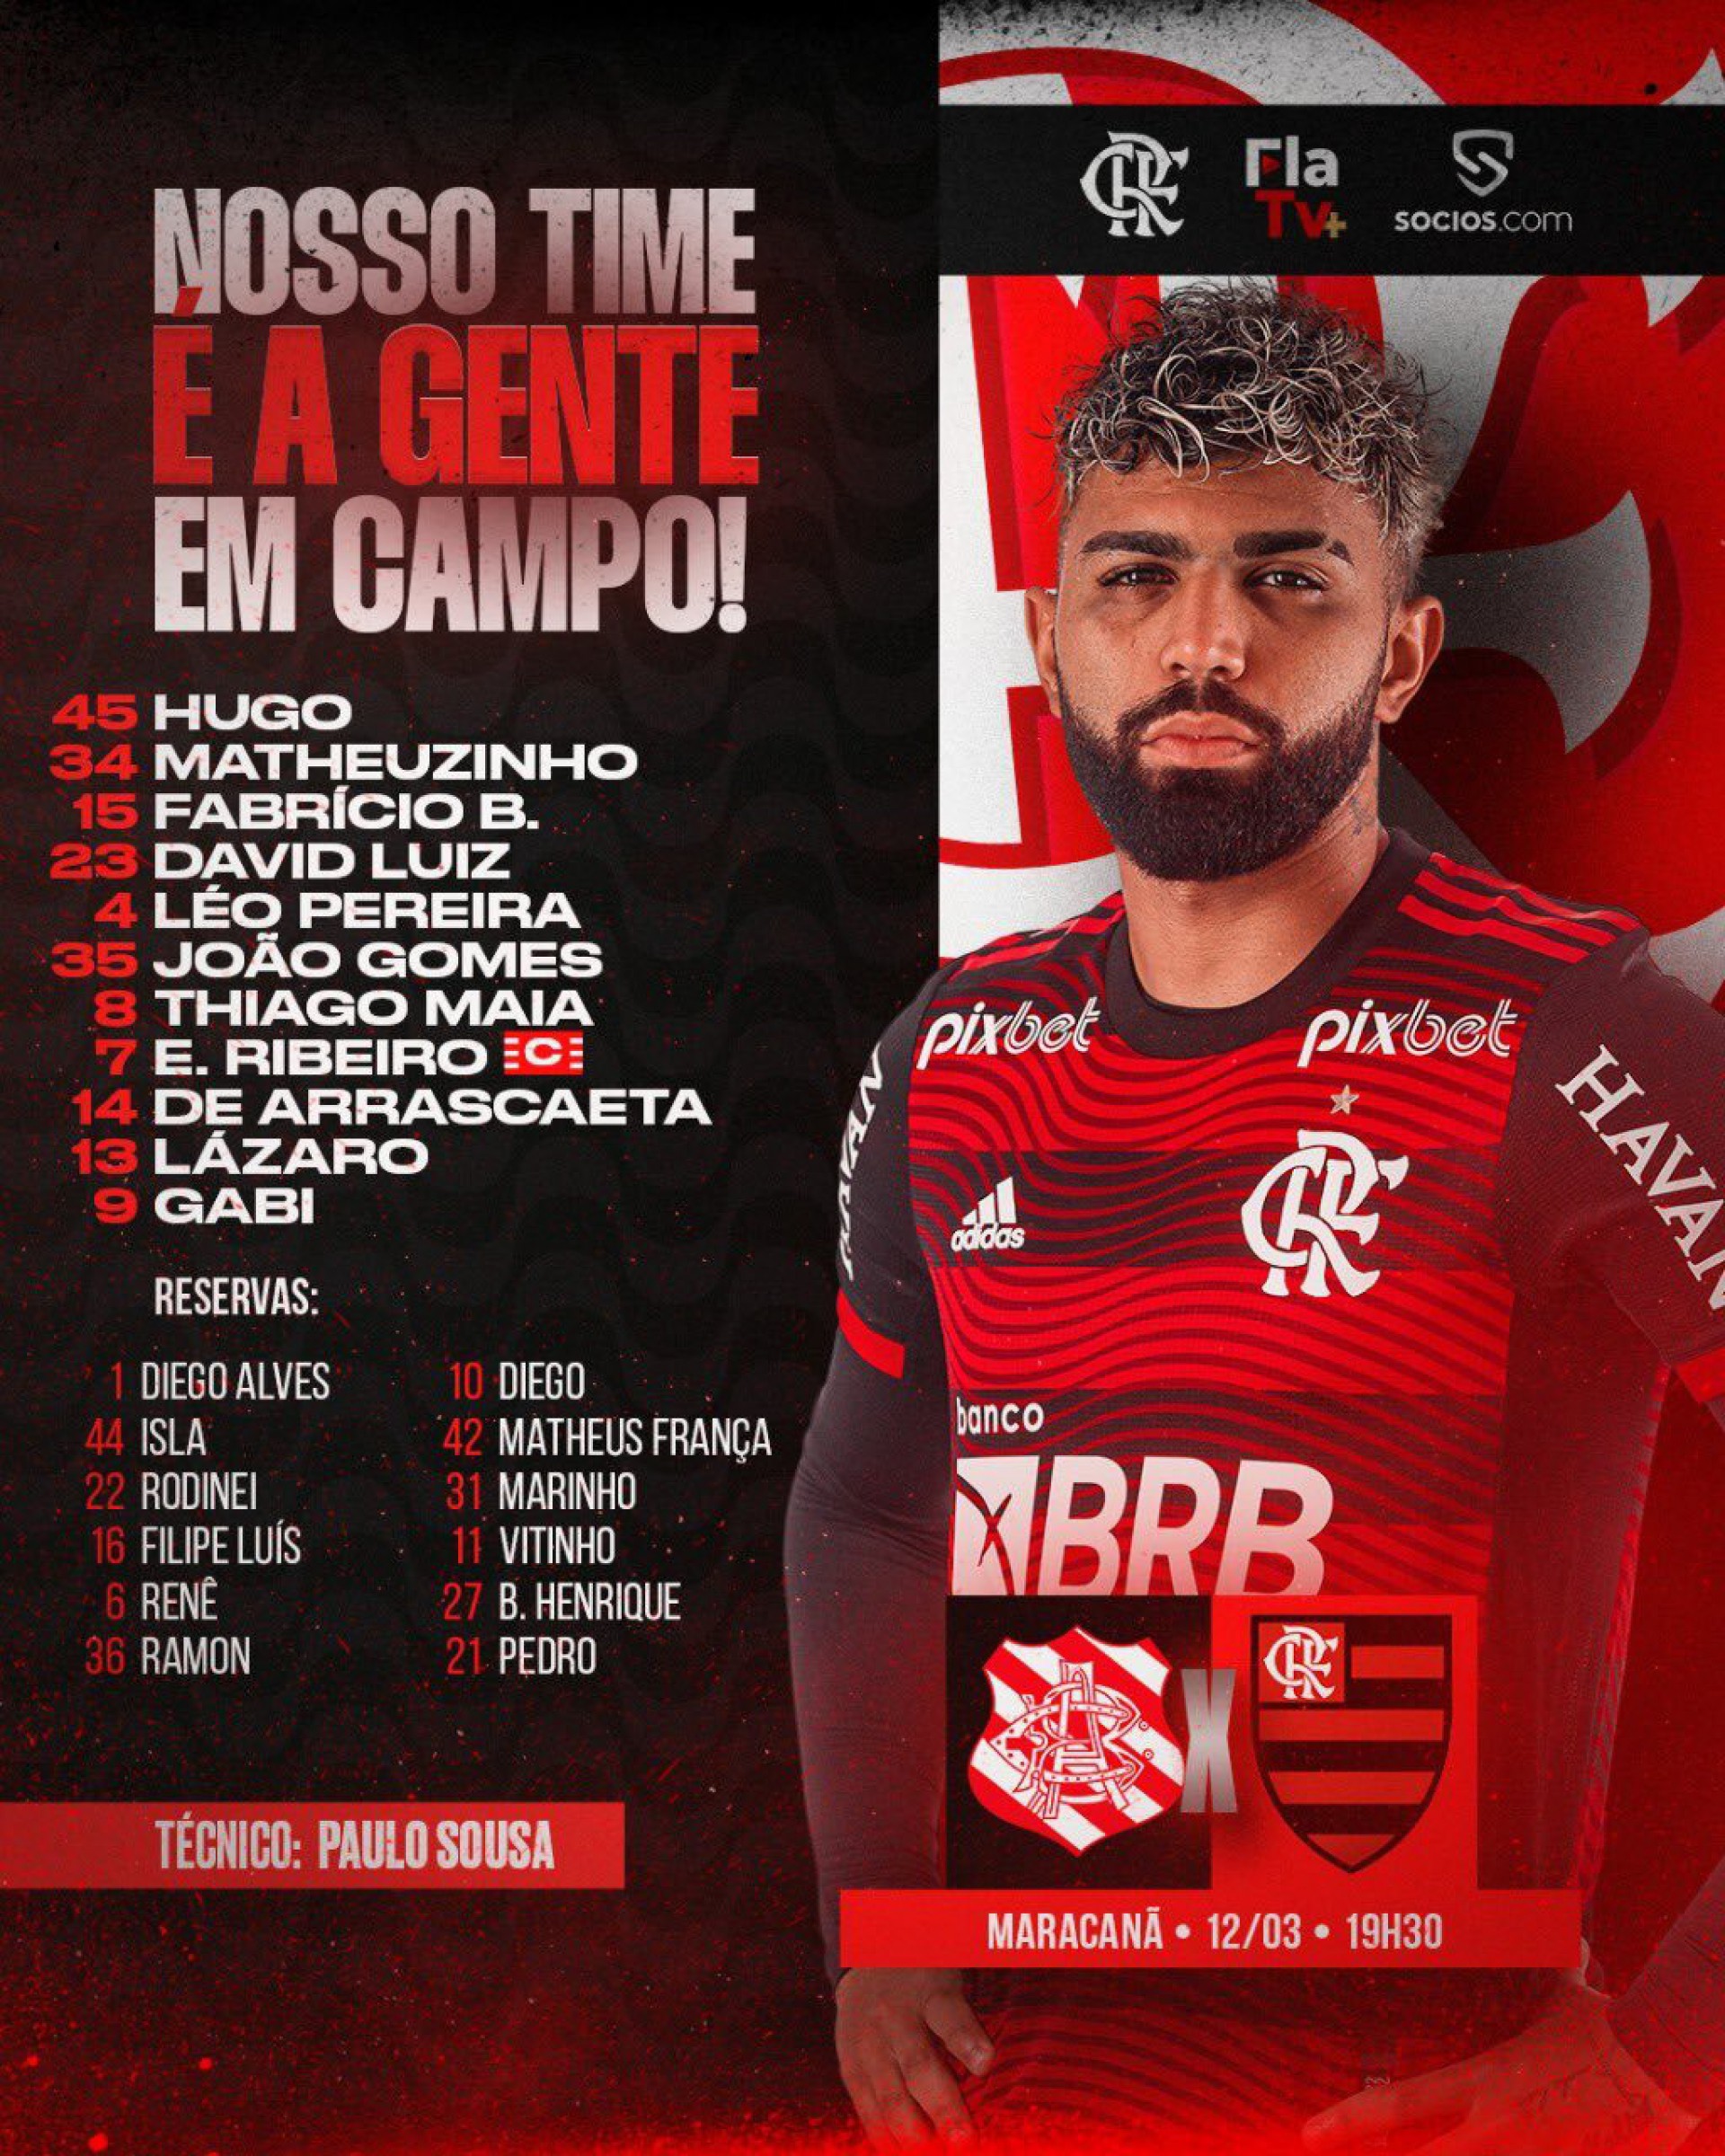 Paulo Sousa escala time do Flamengo para enfrentar o Bangu na estreia do  novo gramado do Maracanã | Flamengo | O Dia